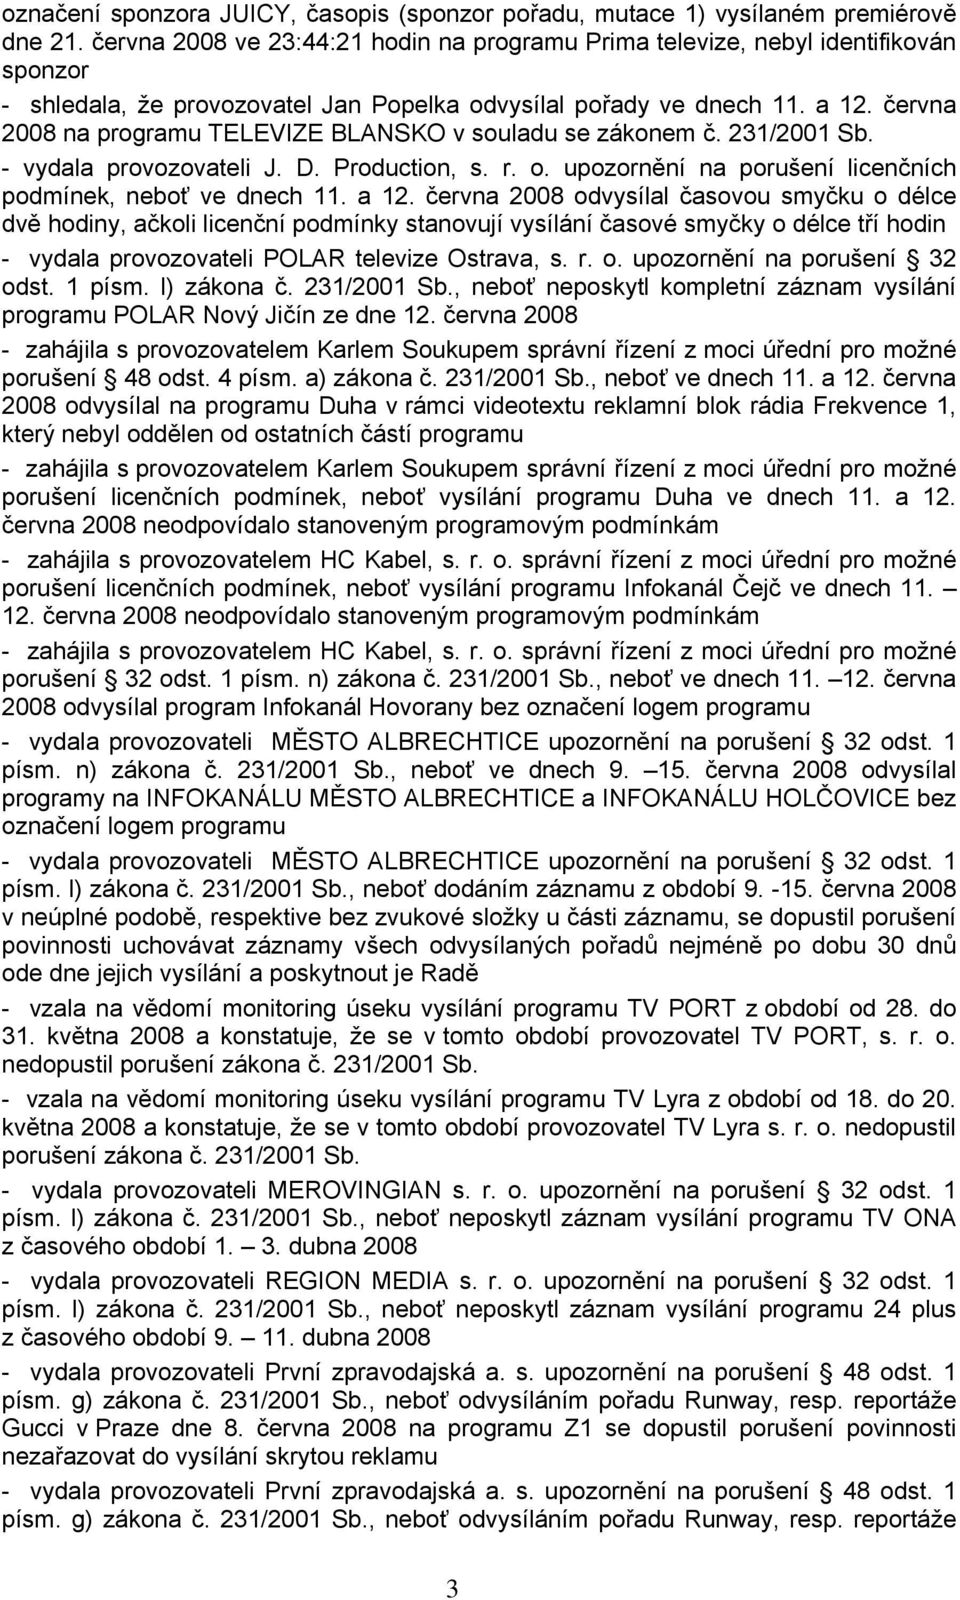 června 2008 na programu TELEVIZE BLANSKO v souladu se zákonem č. 231/2001 Sb. - vydala provozovateli J. D. Production, s. r. o. upozornění na porušení licenčních podmínek, neboť ve dnech 11. a 12.